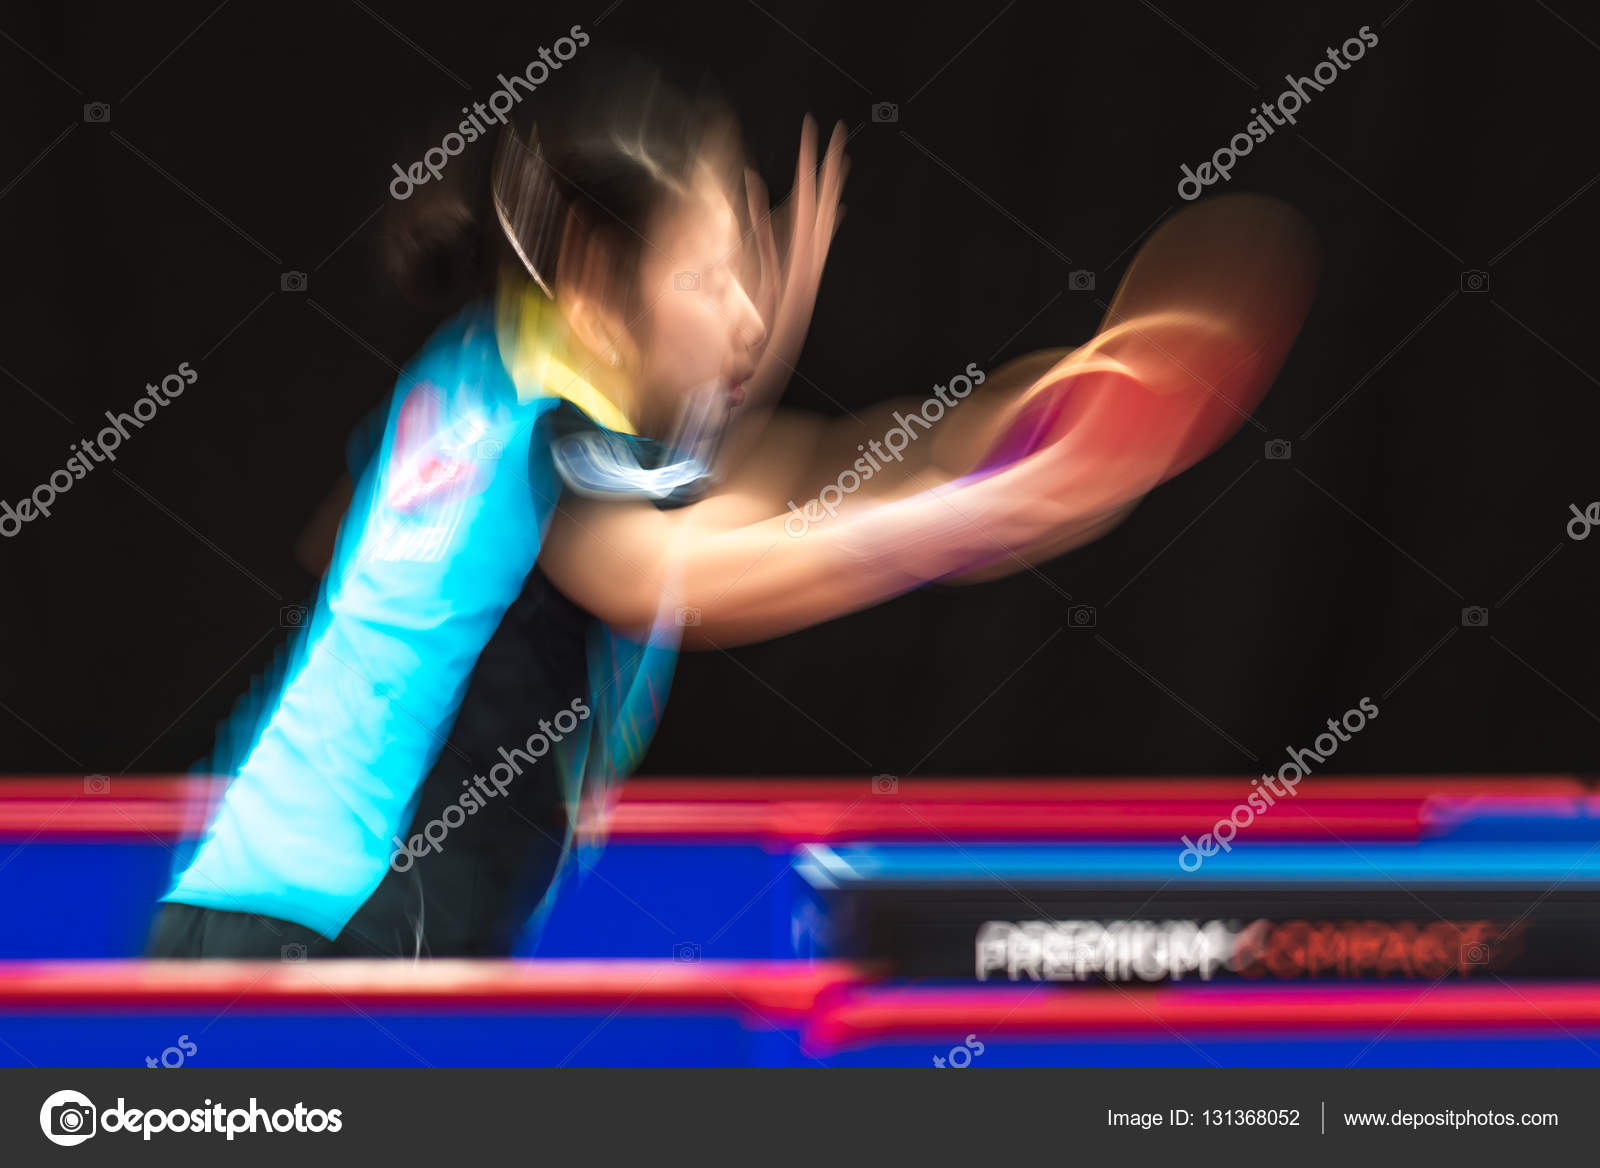 Sakura Mori (JPN) vs Jihee Jeon (KOR) in the table tennis tourna